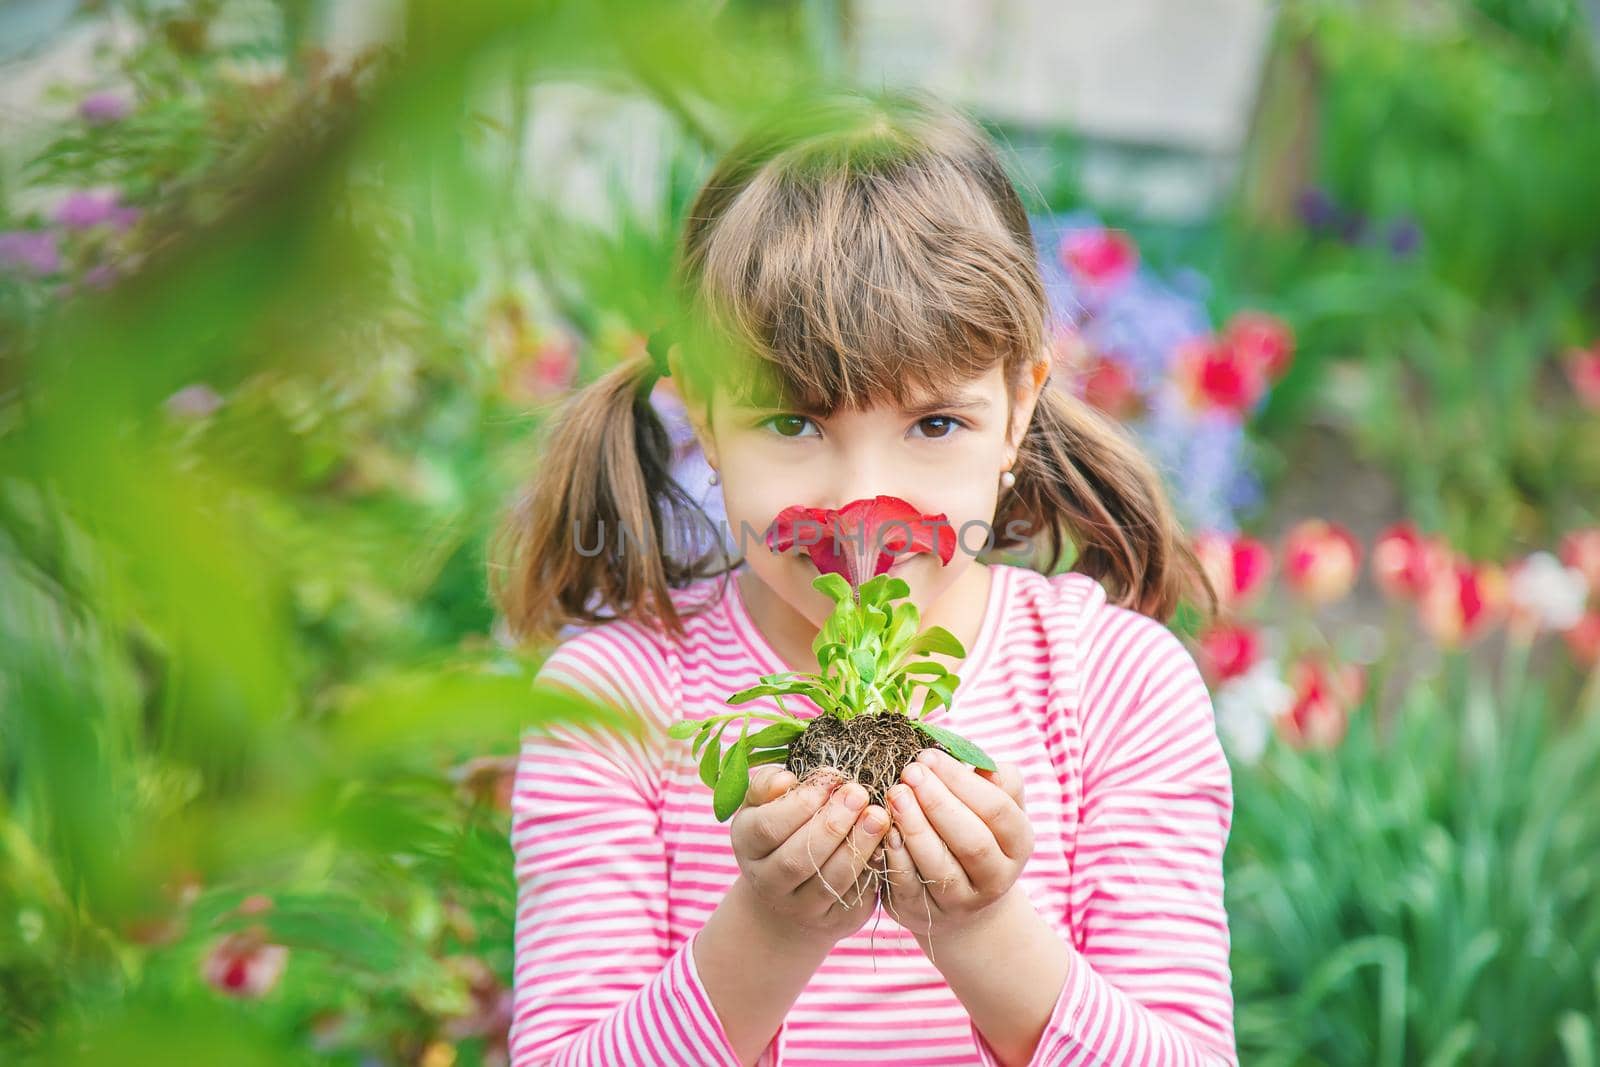 A child plants a flower garden. Selective focus. nature.